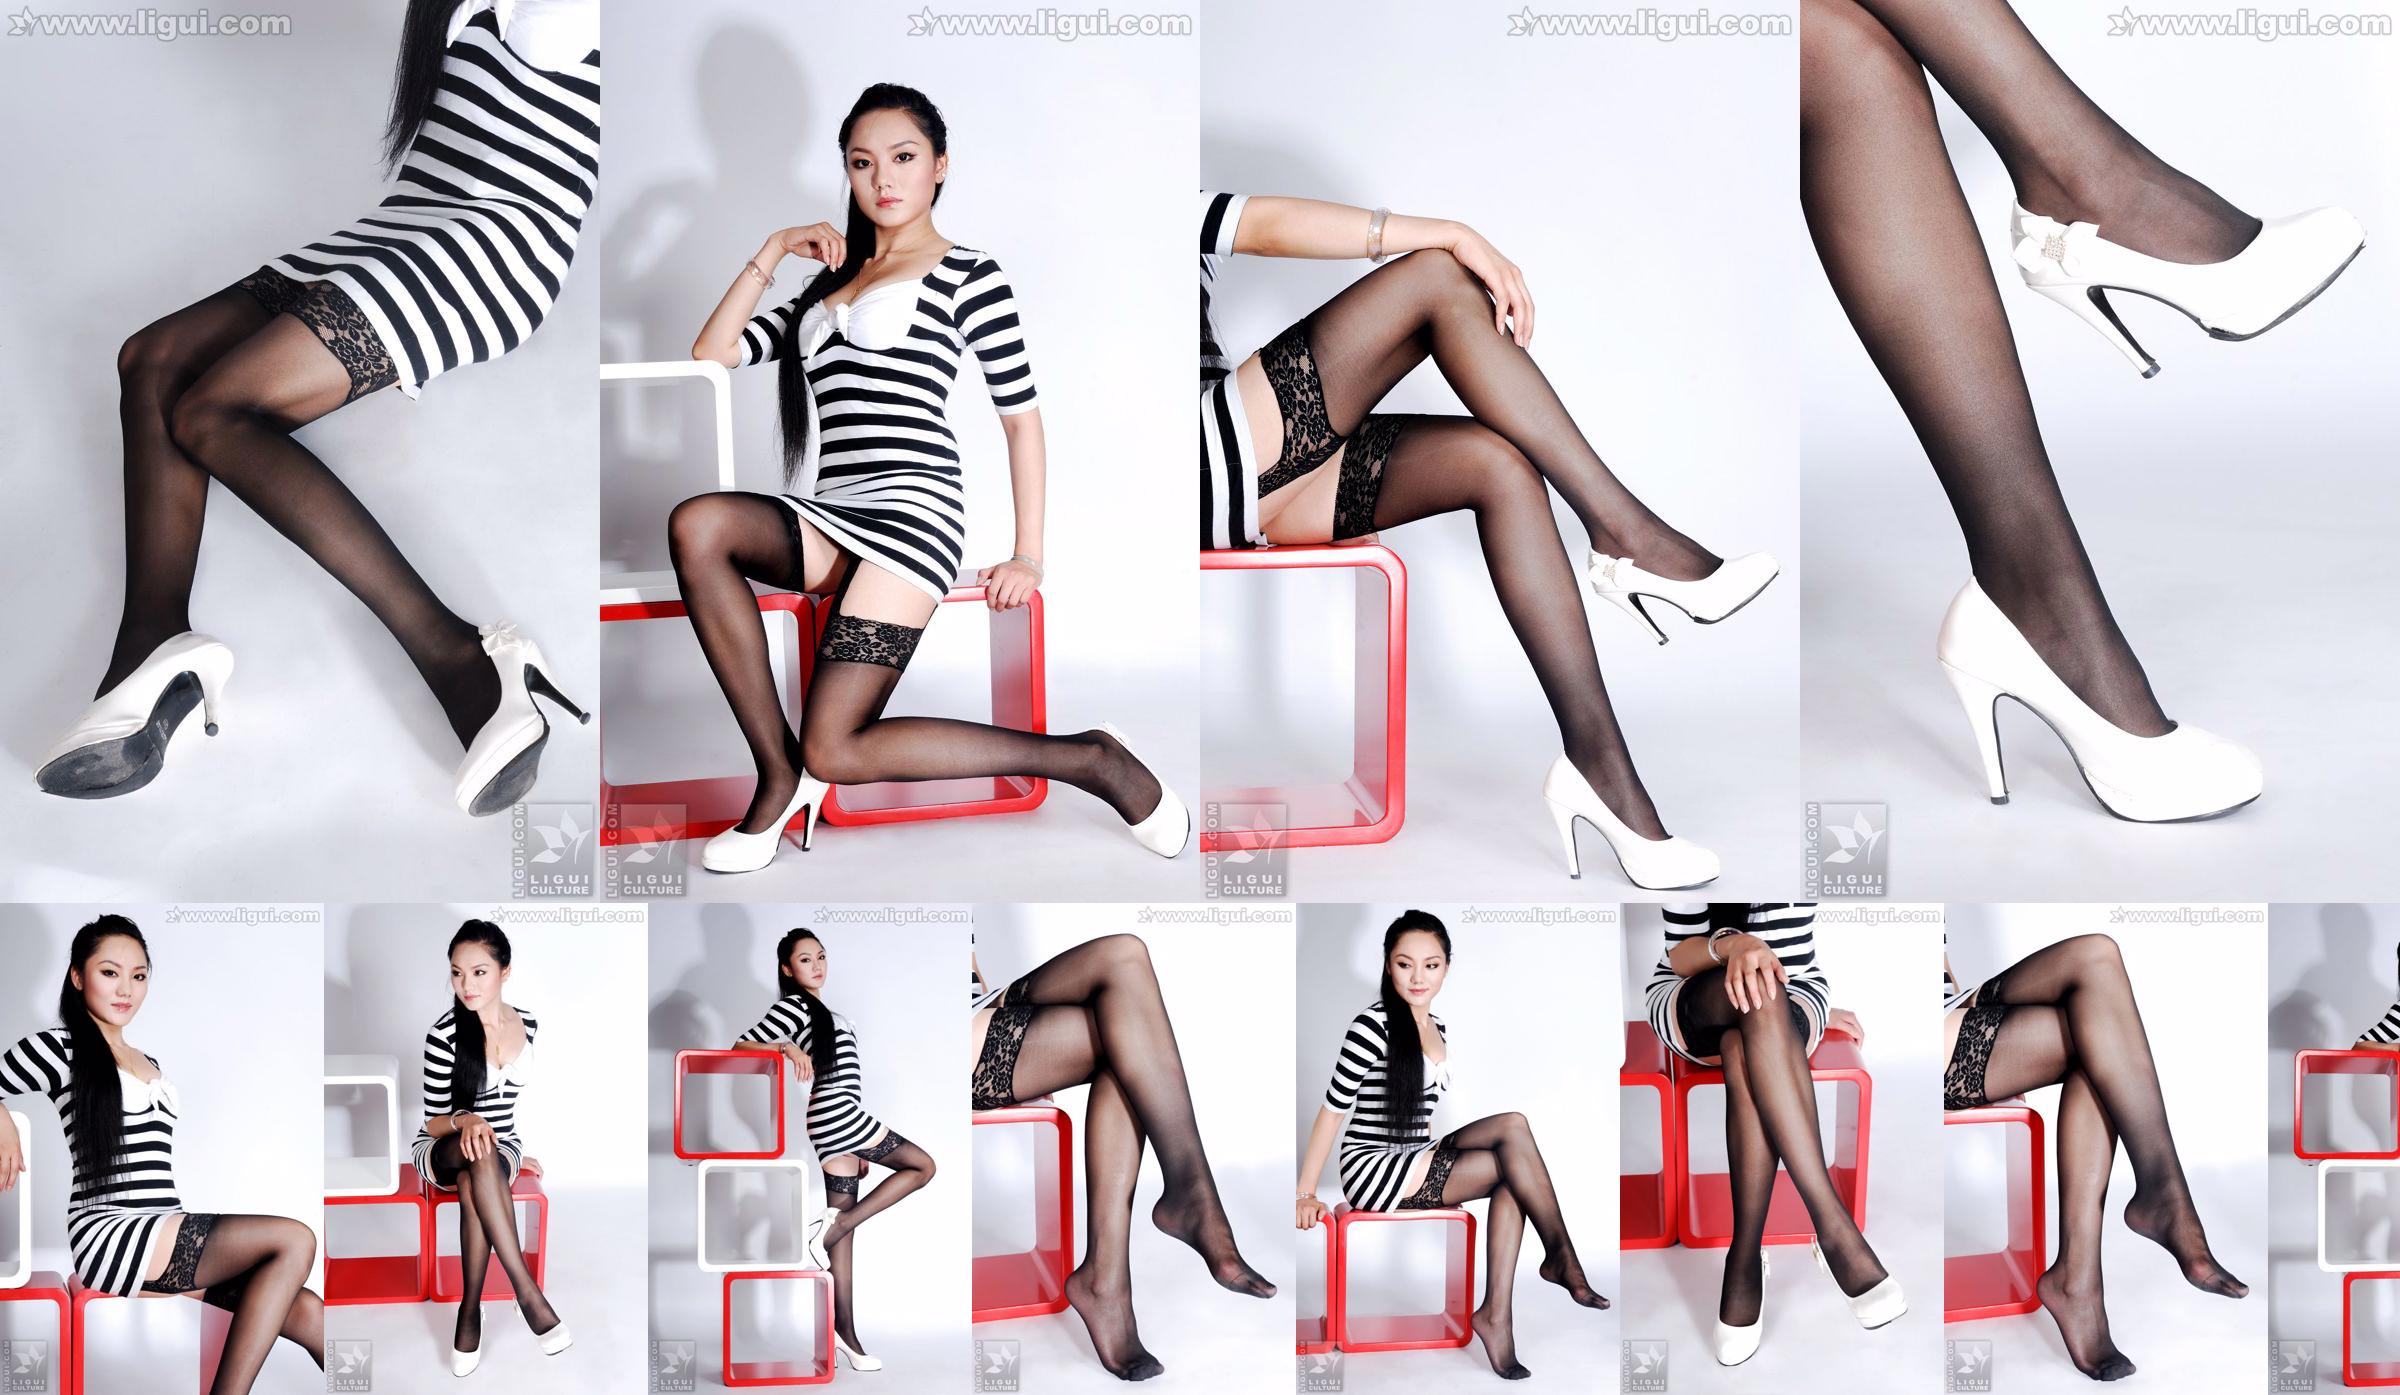 Model Yang Zi „Urok pończoch w prostej dekoracji wnętrz” [丽 柜 LiGui] Zdjęcie pięknych nóg i nefrytowych stóp No.f9835a Strona 4